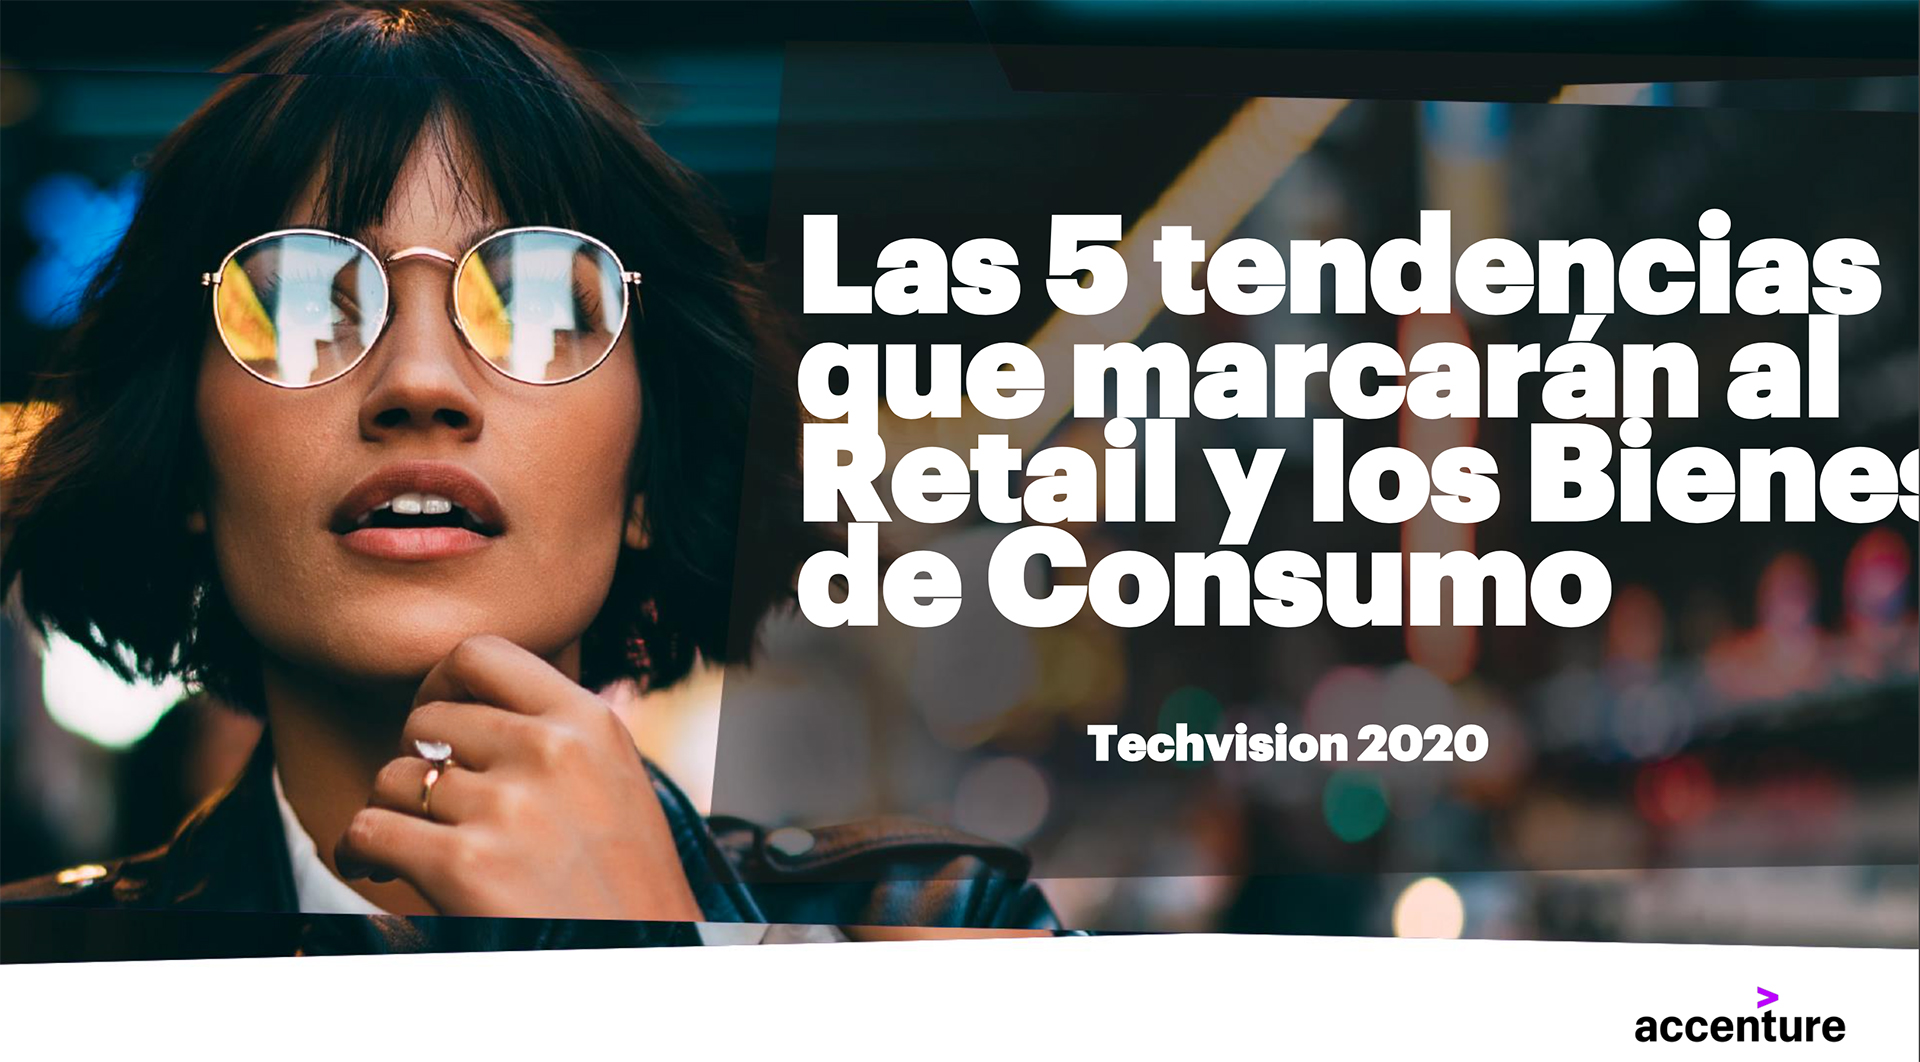 TechVision de Accenture muestra importantes desafíos en transformación digital de la industria de retail y bienes de consumo chilena